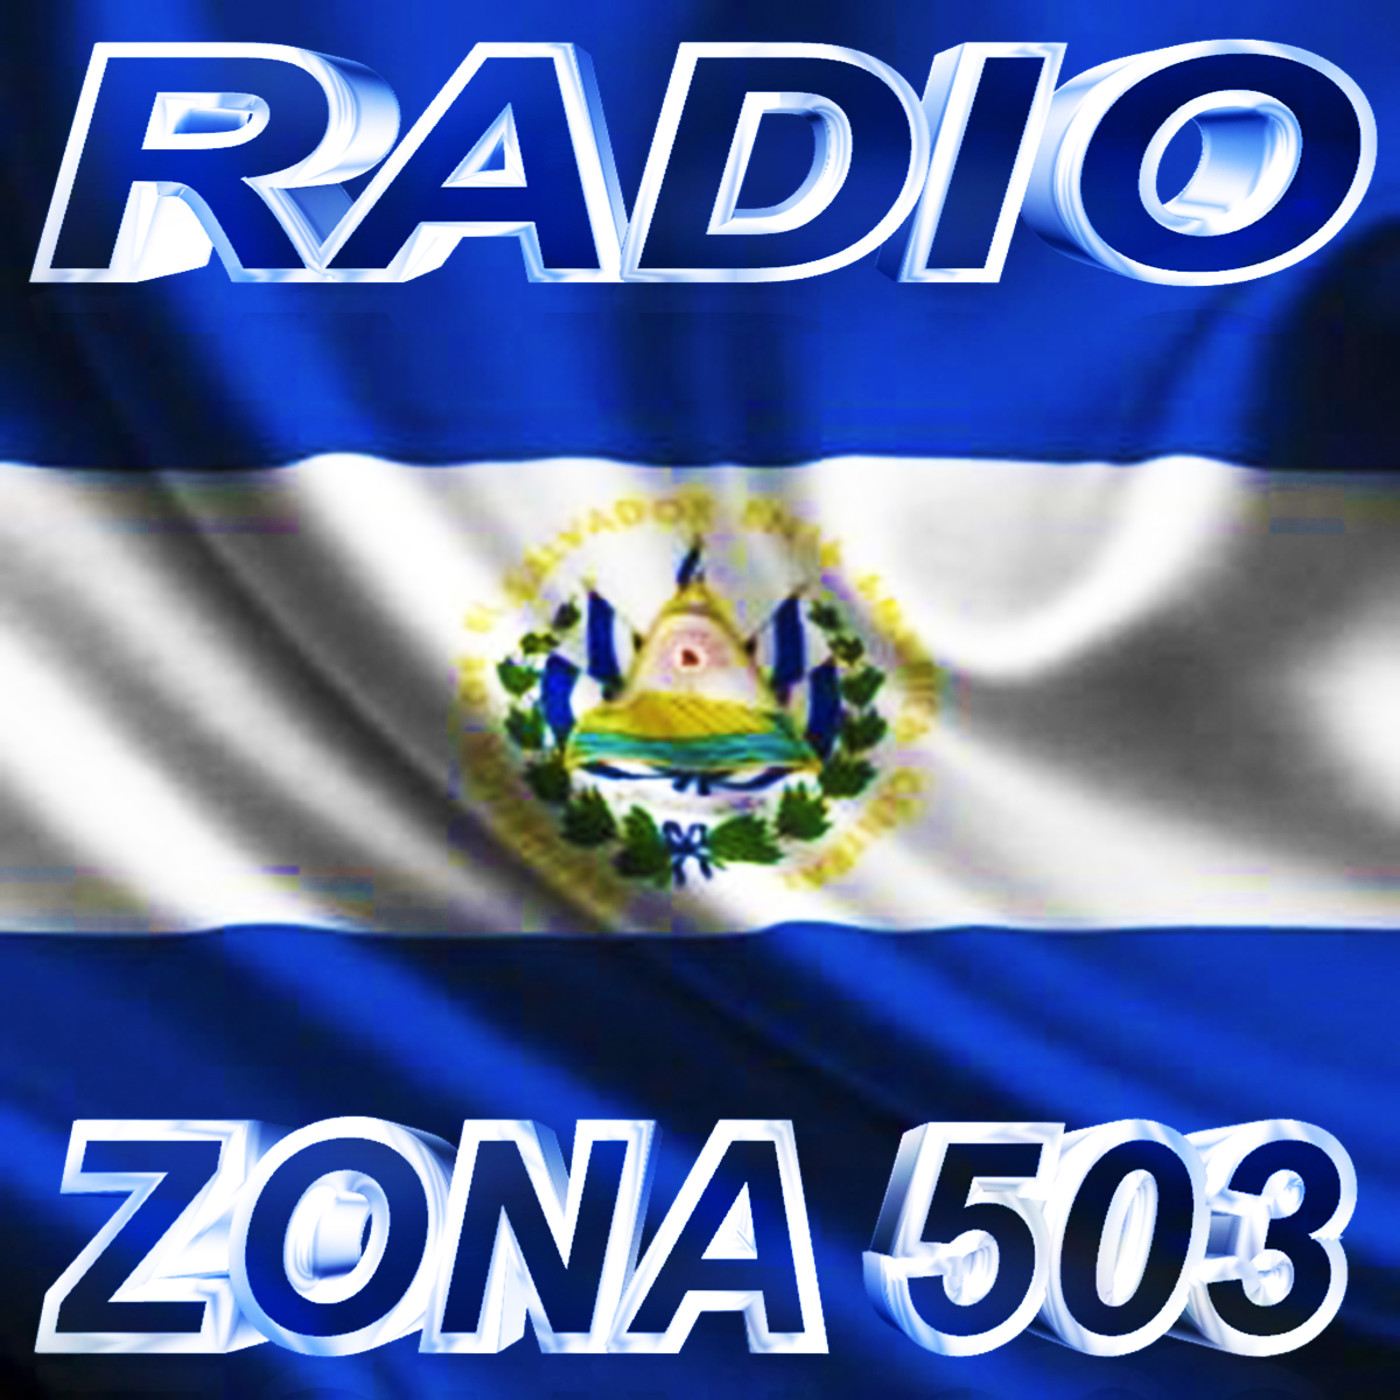 El Salvador, Mexico, Guatemala, Honduras Romantica - Podcast en iVoox.